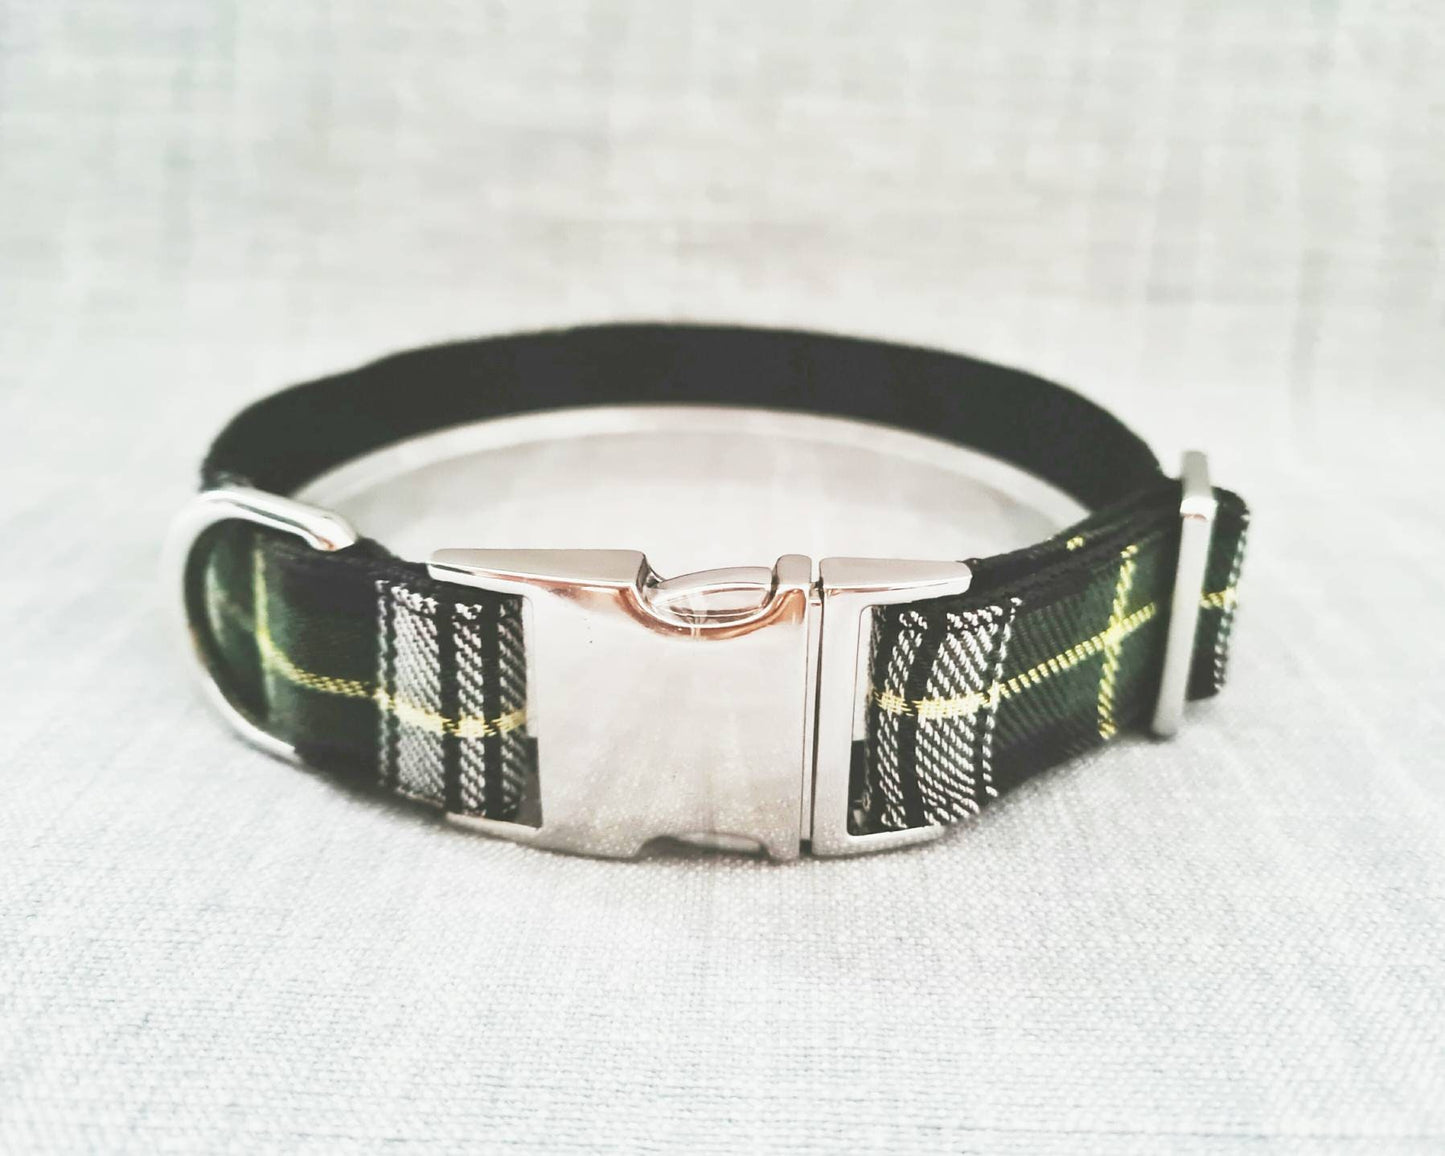 Green tartan dog collar